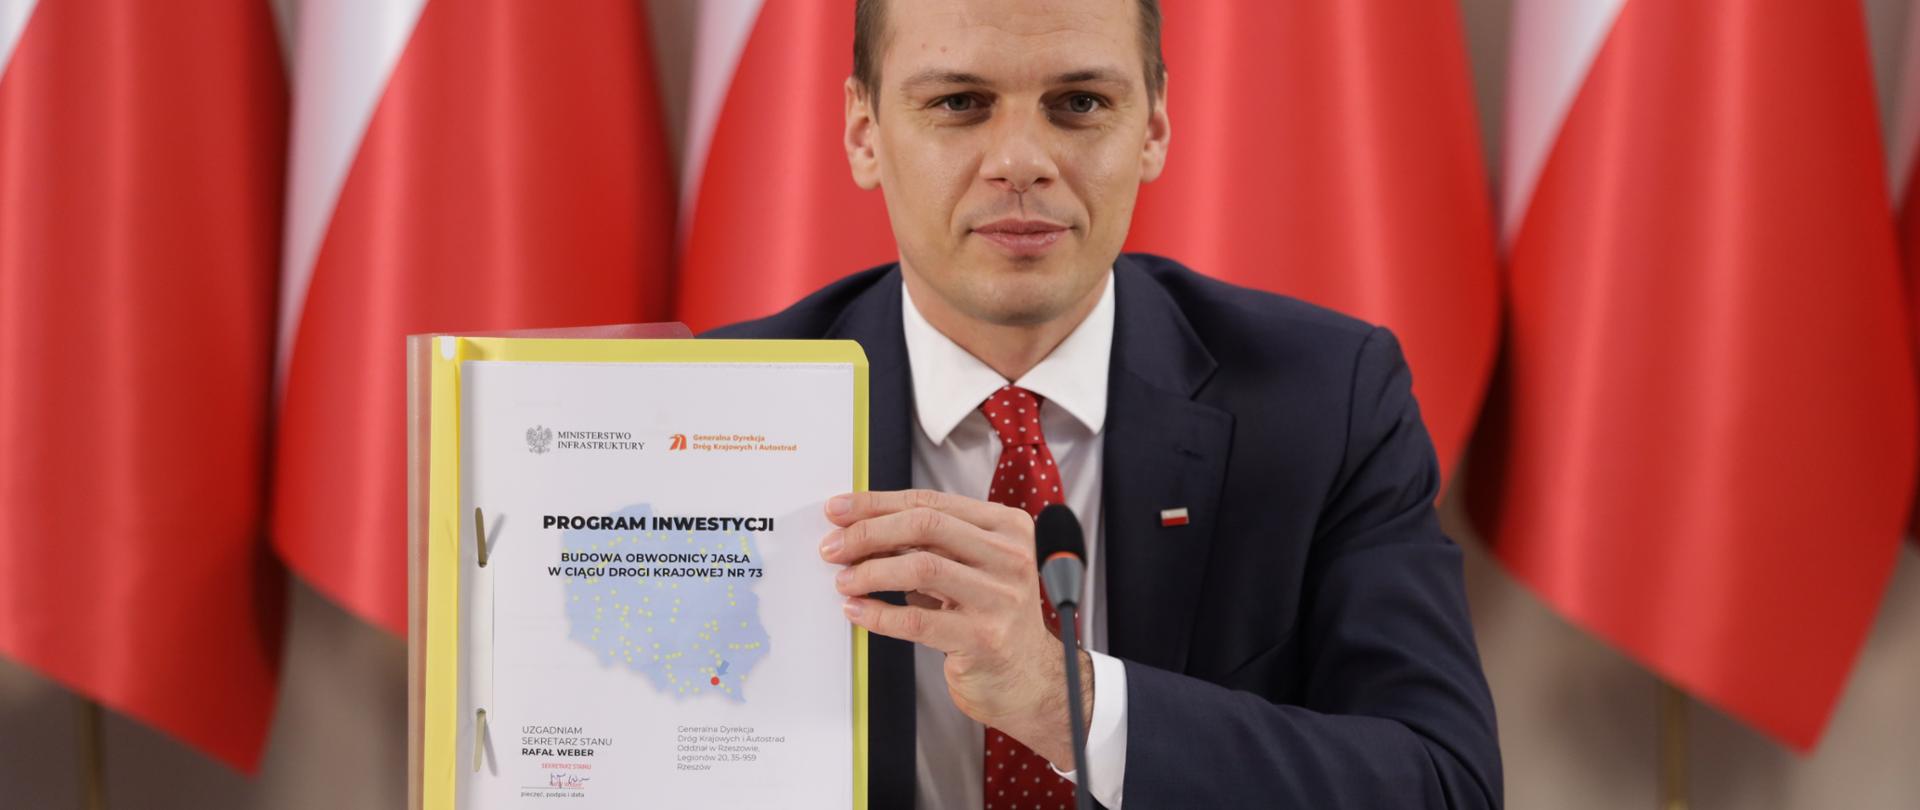 Wiceminister infrastruktury Rafał Weber zatwierdził Program inwestycji dla obwodnicy Jasła
